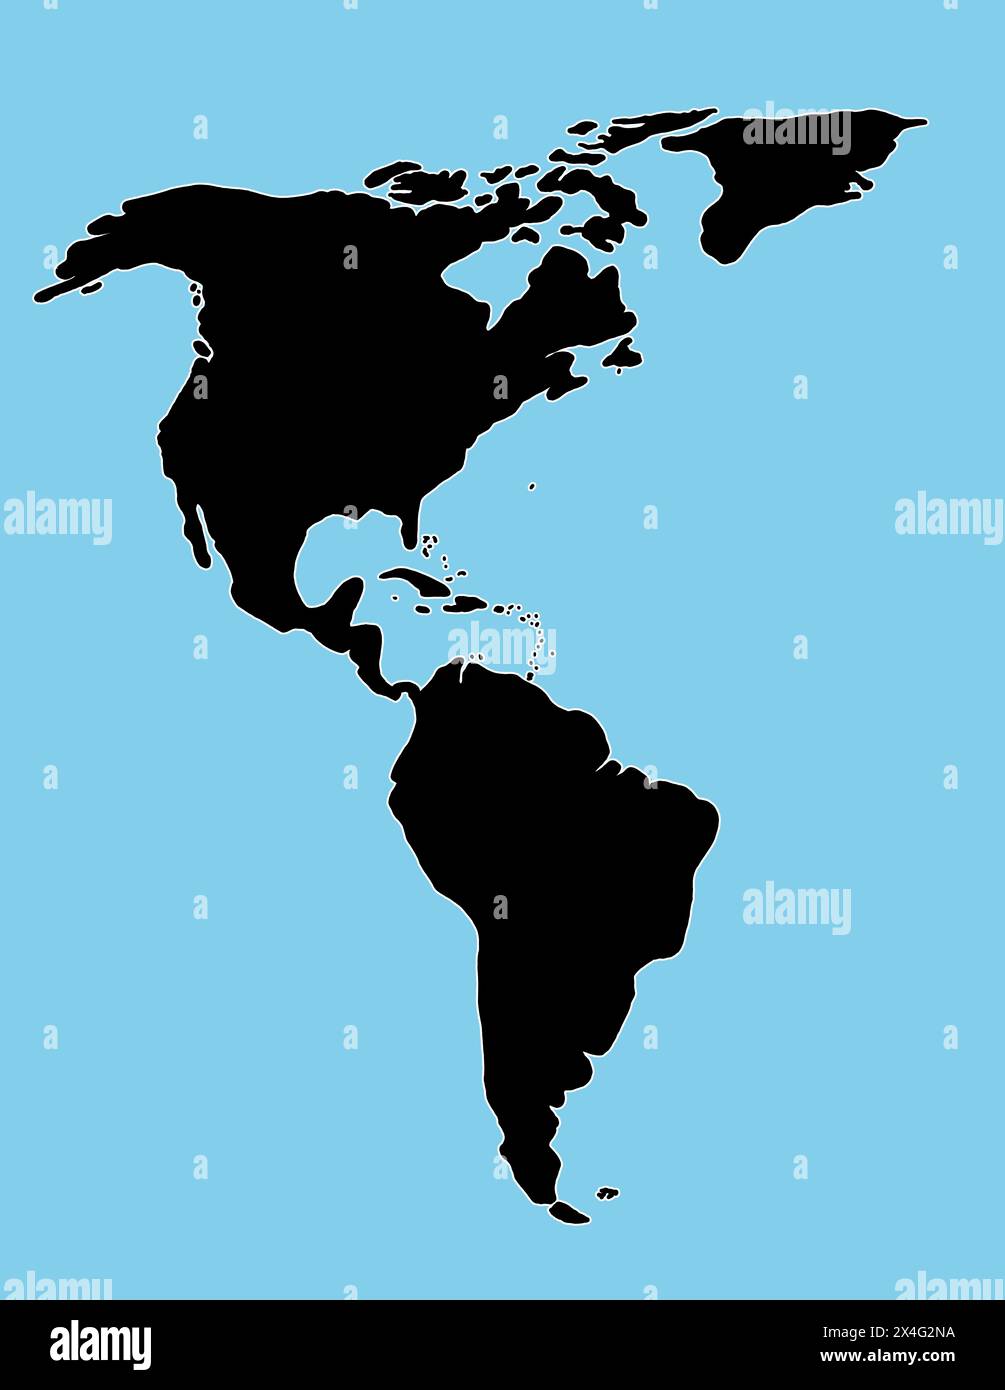 Silhouette nera del Sud e del Nord America su sfondo bianco. Illustrazione della mappa del mondo con i continenti americani. Foto Stock